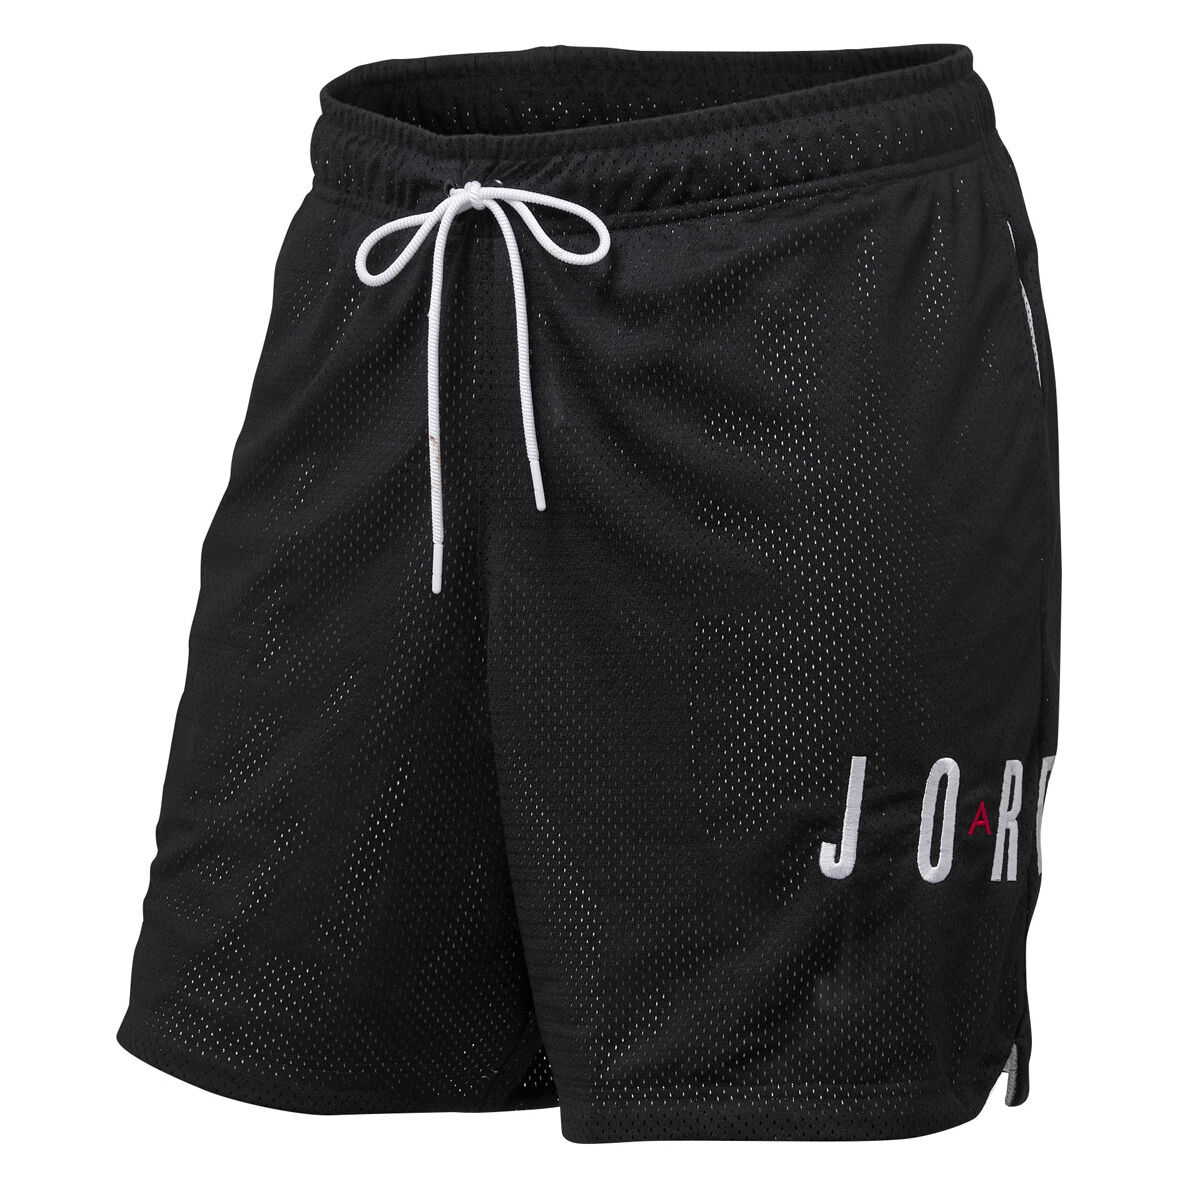 air jordan shorts xxl